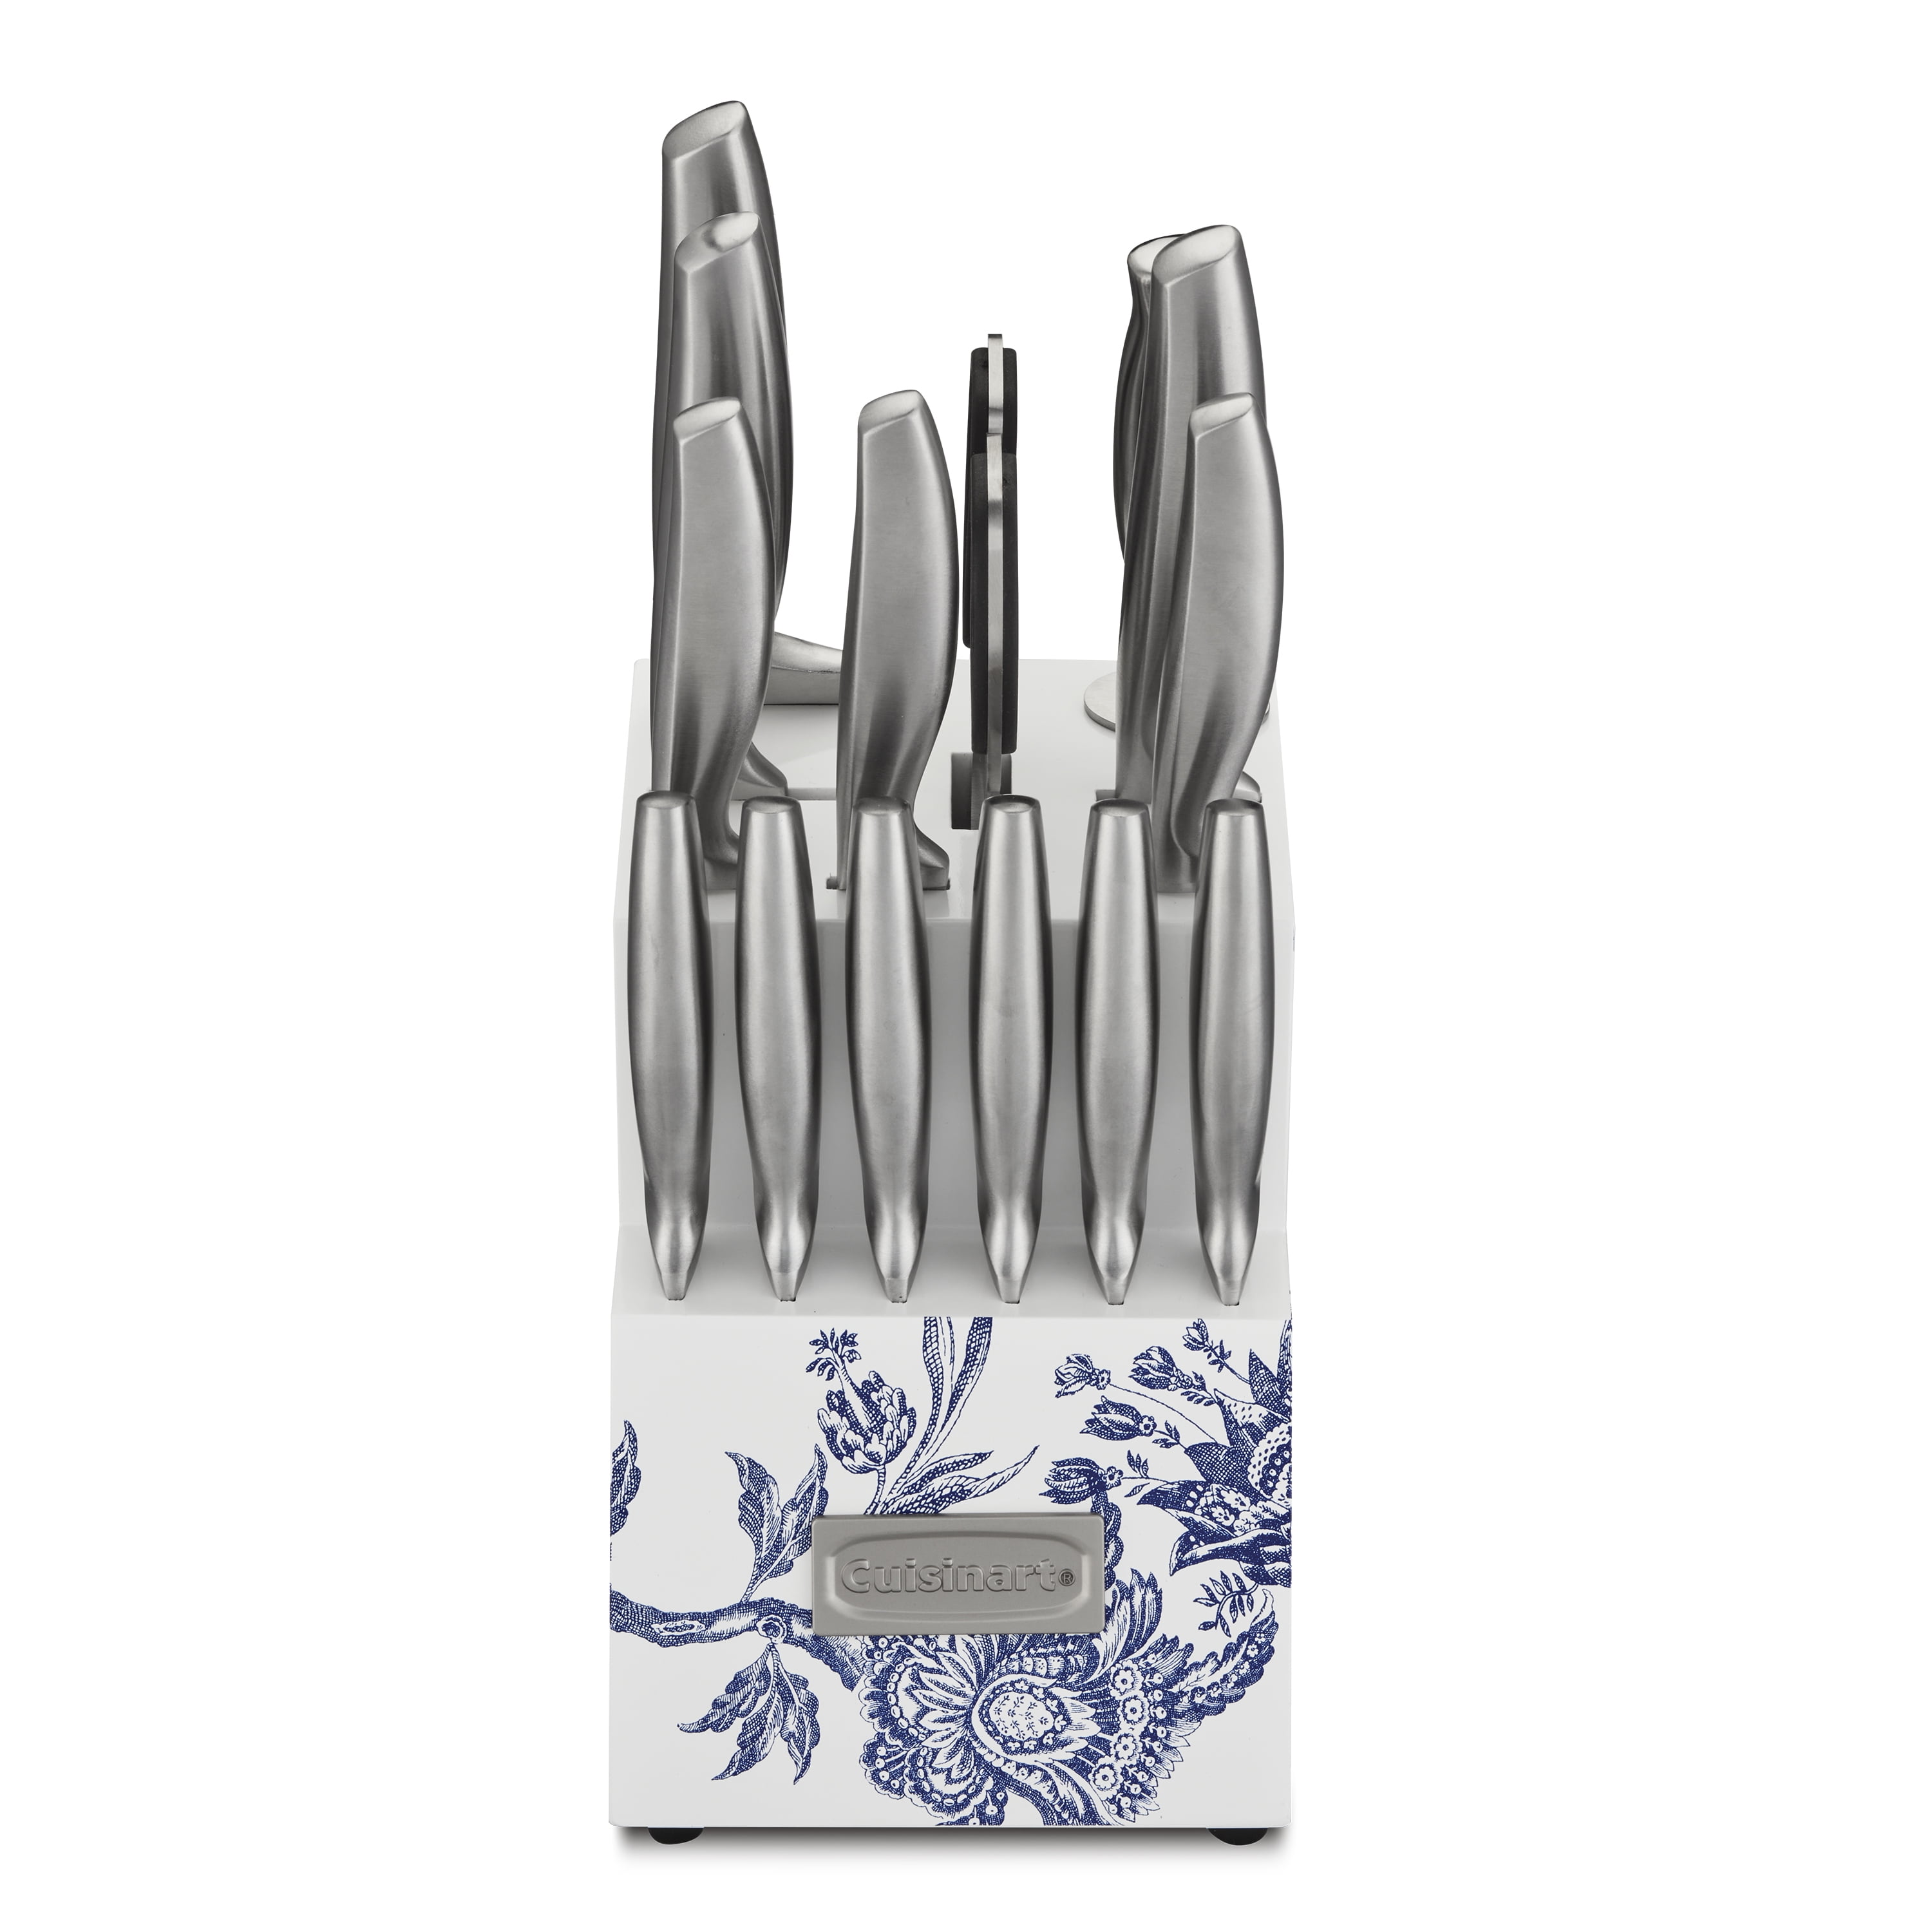 Cuisinart Graphix 15-Piece Cutlery Set - C77SS-15P